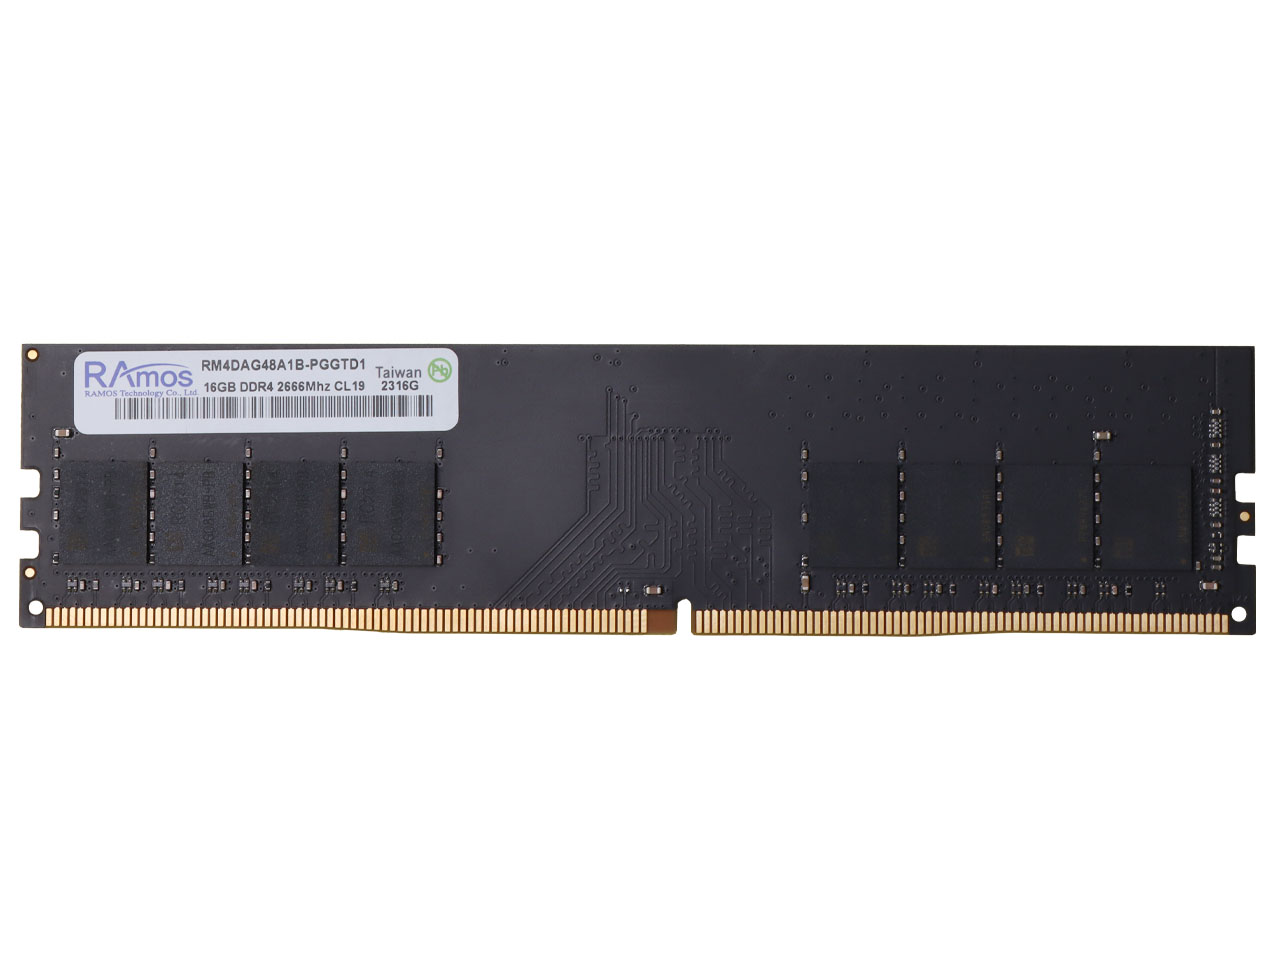 خرید بدون واسطه رم دسکتاپ DDR4 راموس 2666MHz مدل RAmos ظرفیت 16 گیگابایت با گارانتی گروه ام آی تی